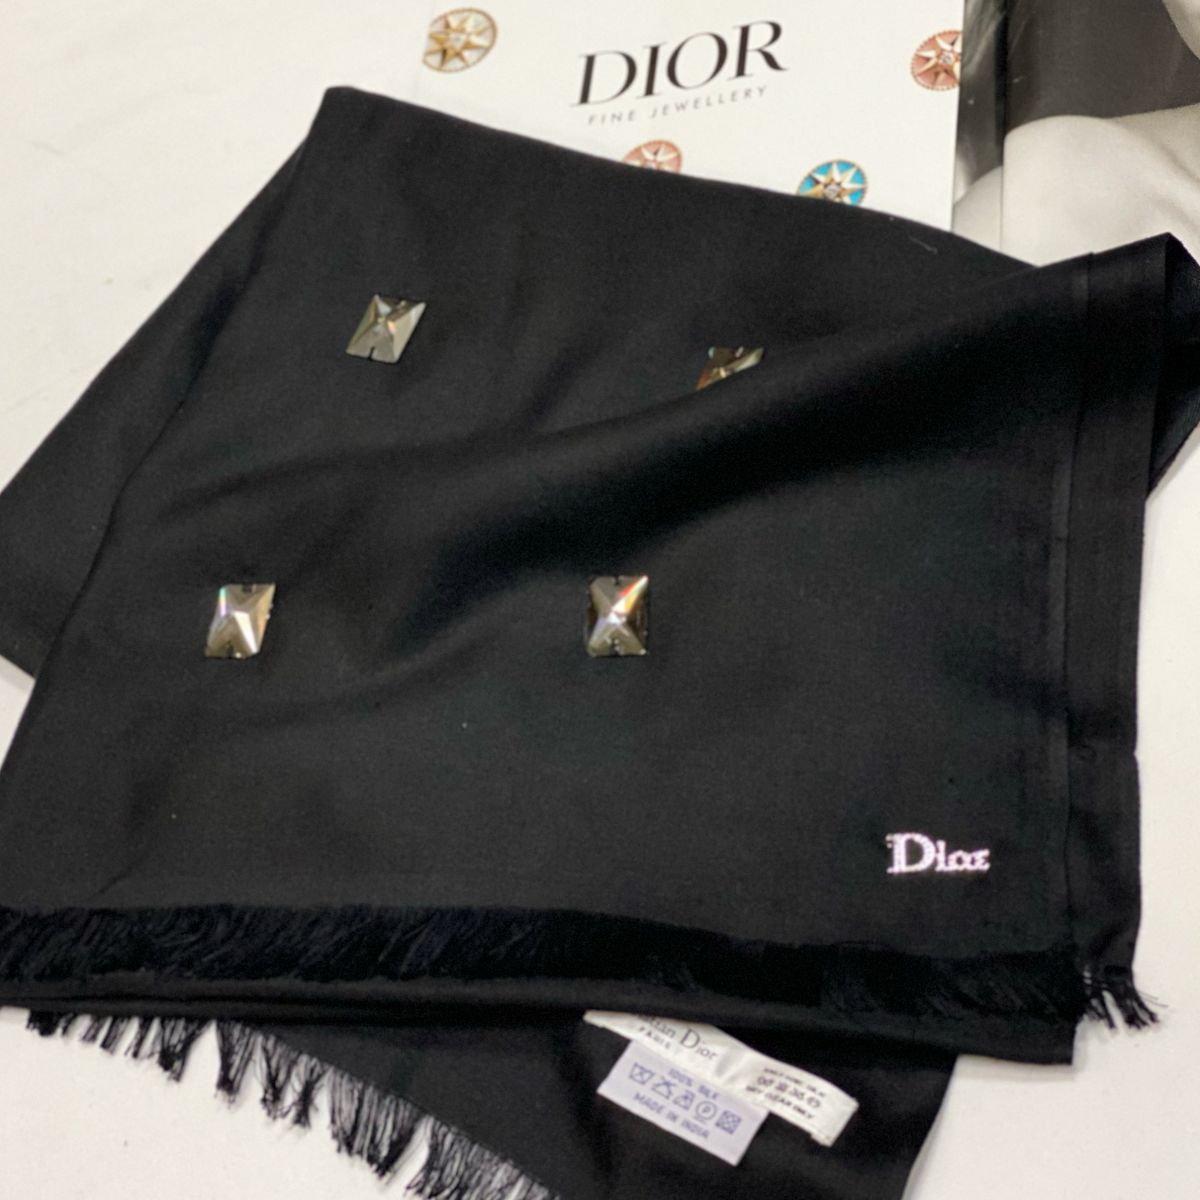 Палантин / отделка камни / Christian Dior размер 230/70 цена 15 385 руб 